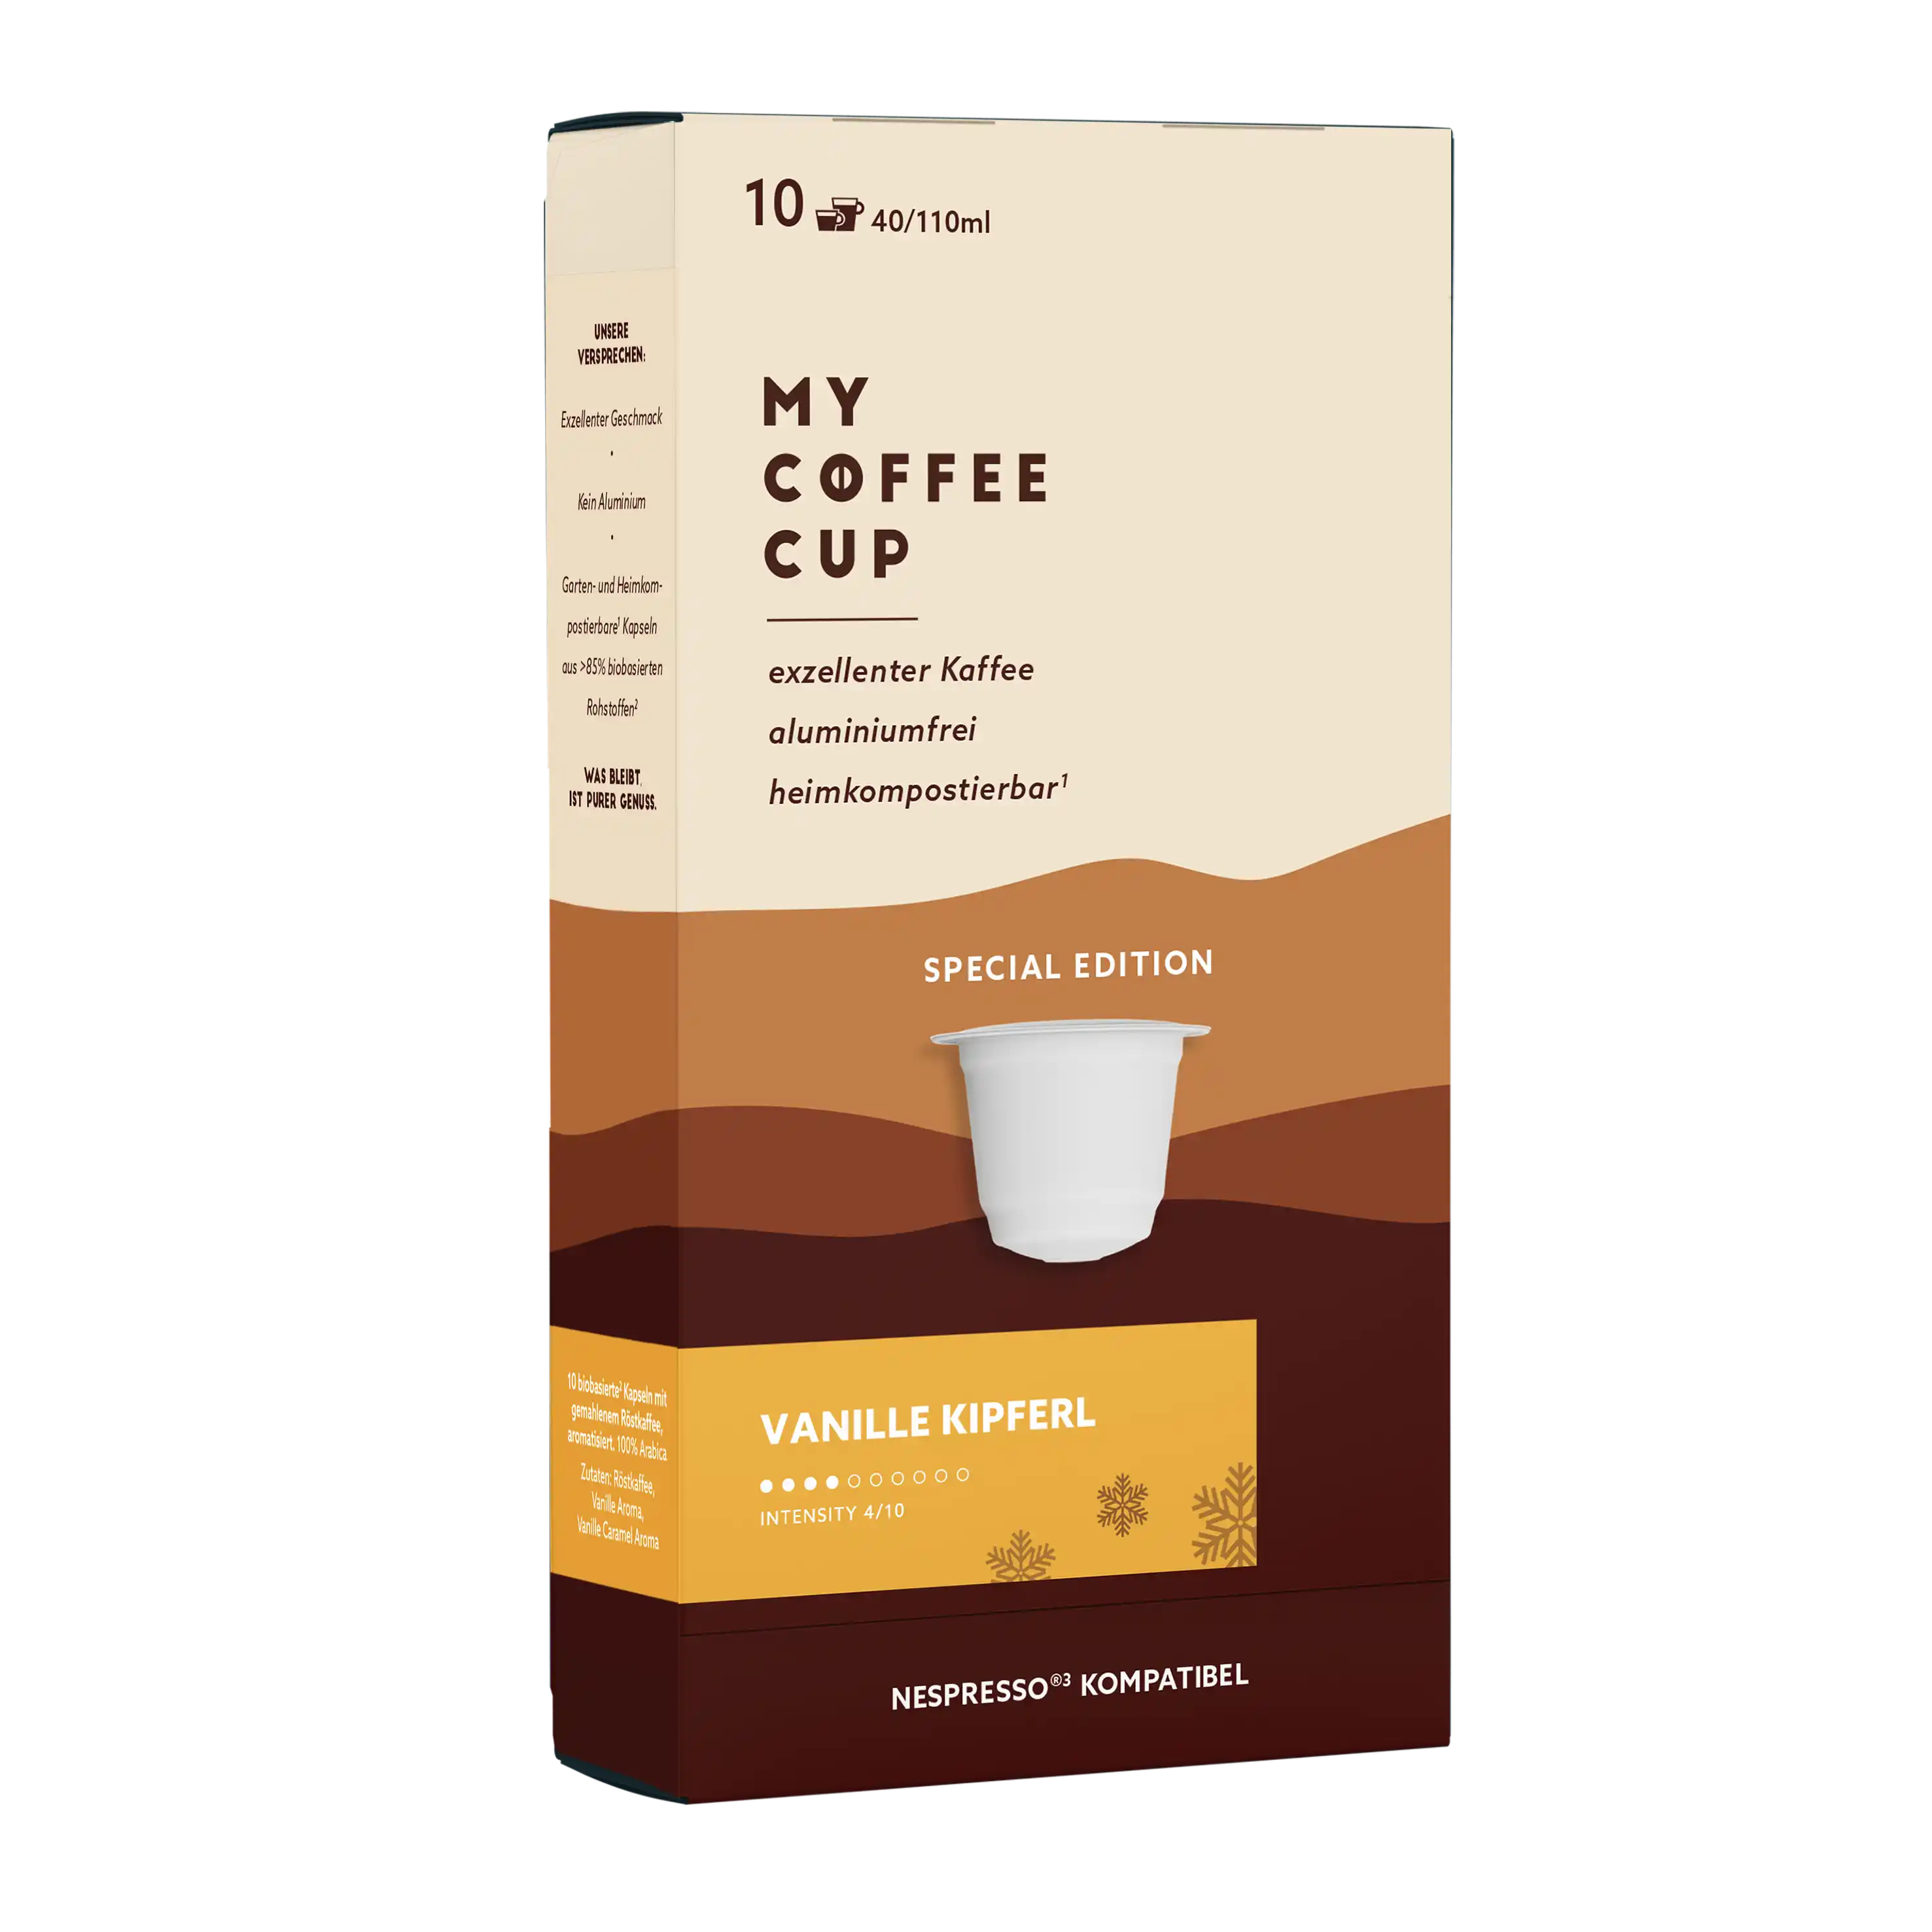 Nespresso kompatible Kapseln - Vanille Kipferl kaffee 10 - MyCoffeeCup.de